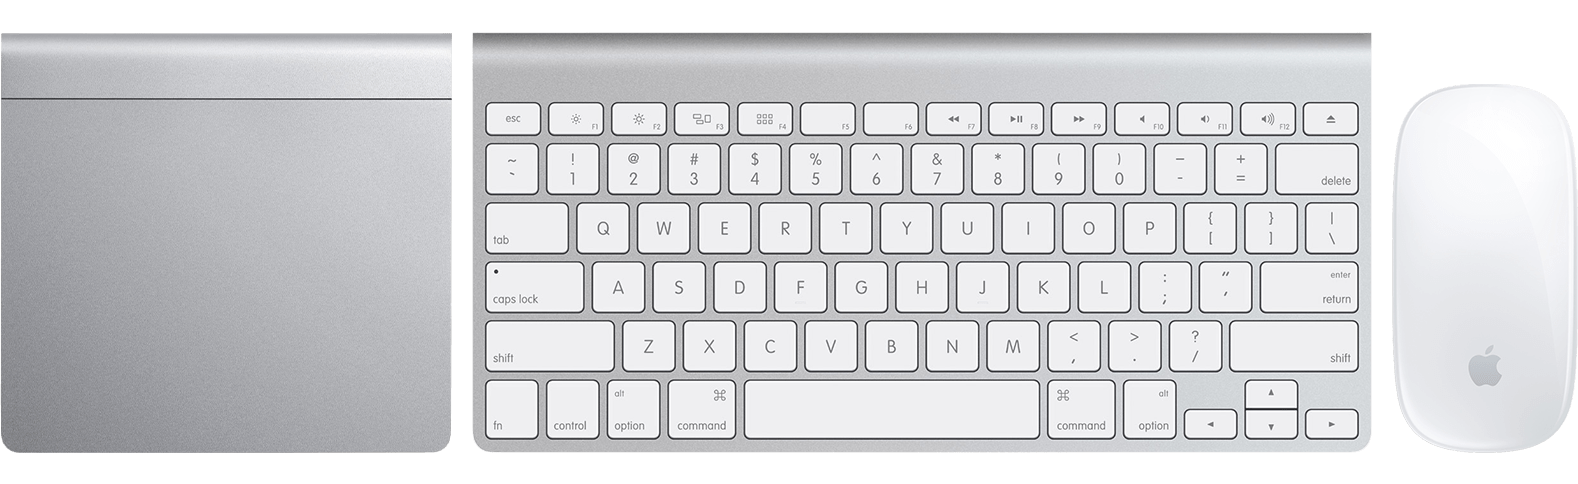 Magic Keyboard、Magic Mouse、Magic Trackpad を Mac に設定する ...